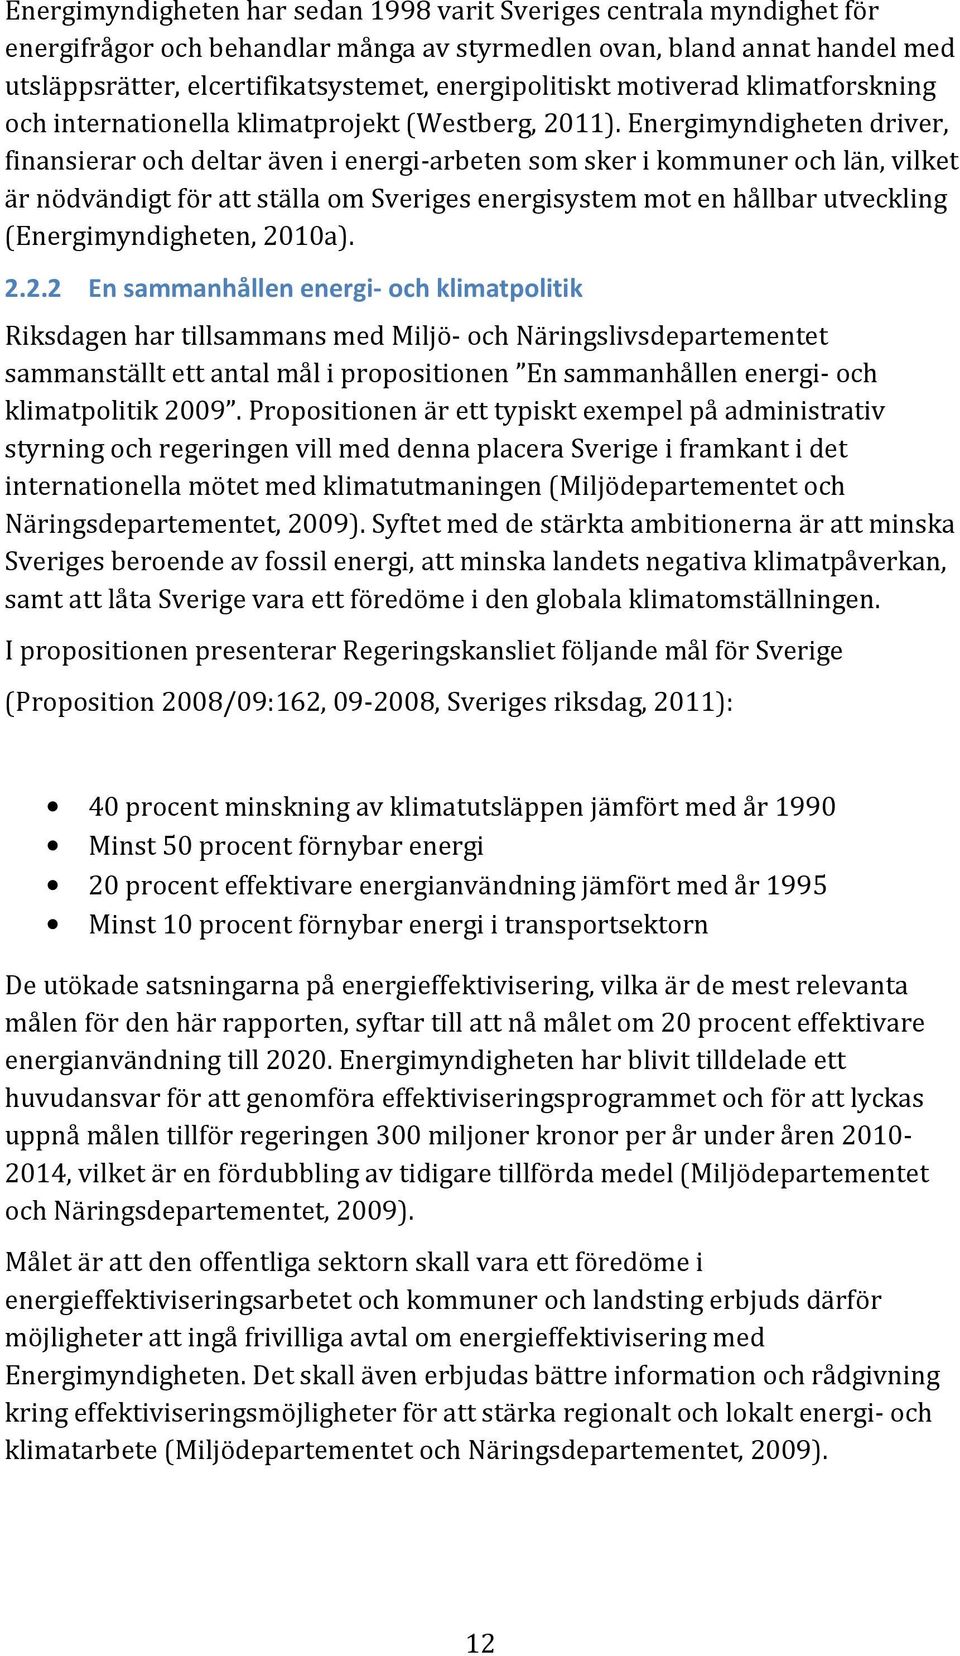 Energimyndigheten driver, finansierar och deltar även i energi-arbeten som sker i kommuner och län, vilket är nödvändigt för att ställa om Sveriges energisystem mot en hållbar utveckling